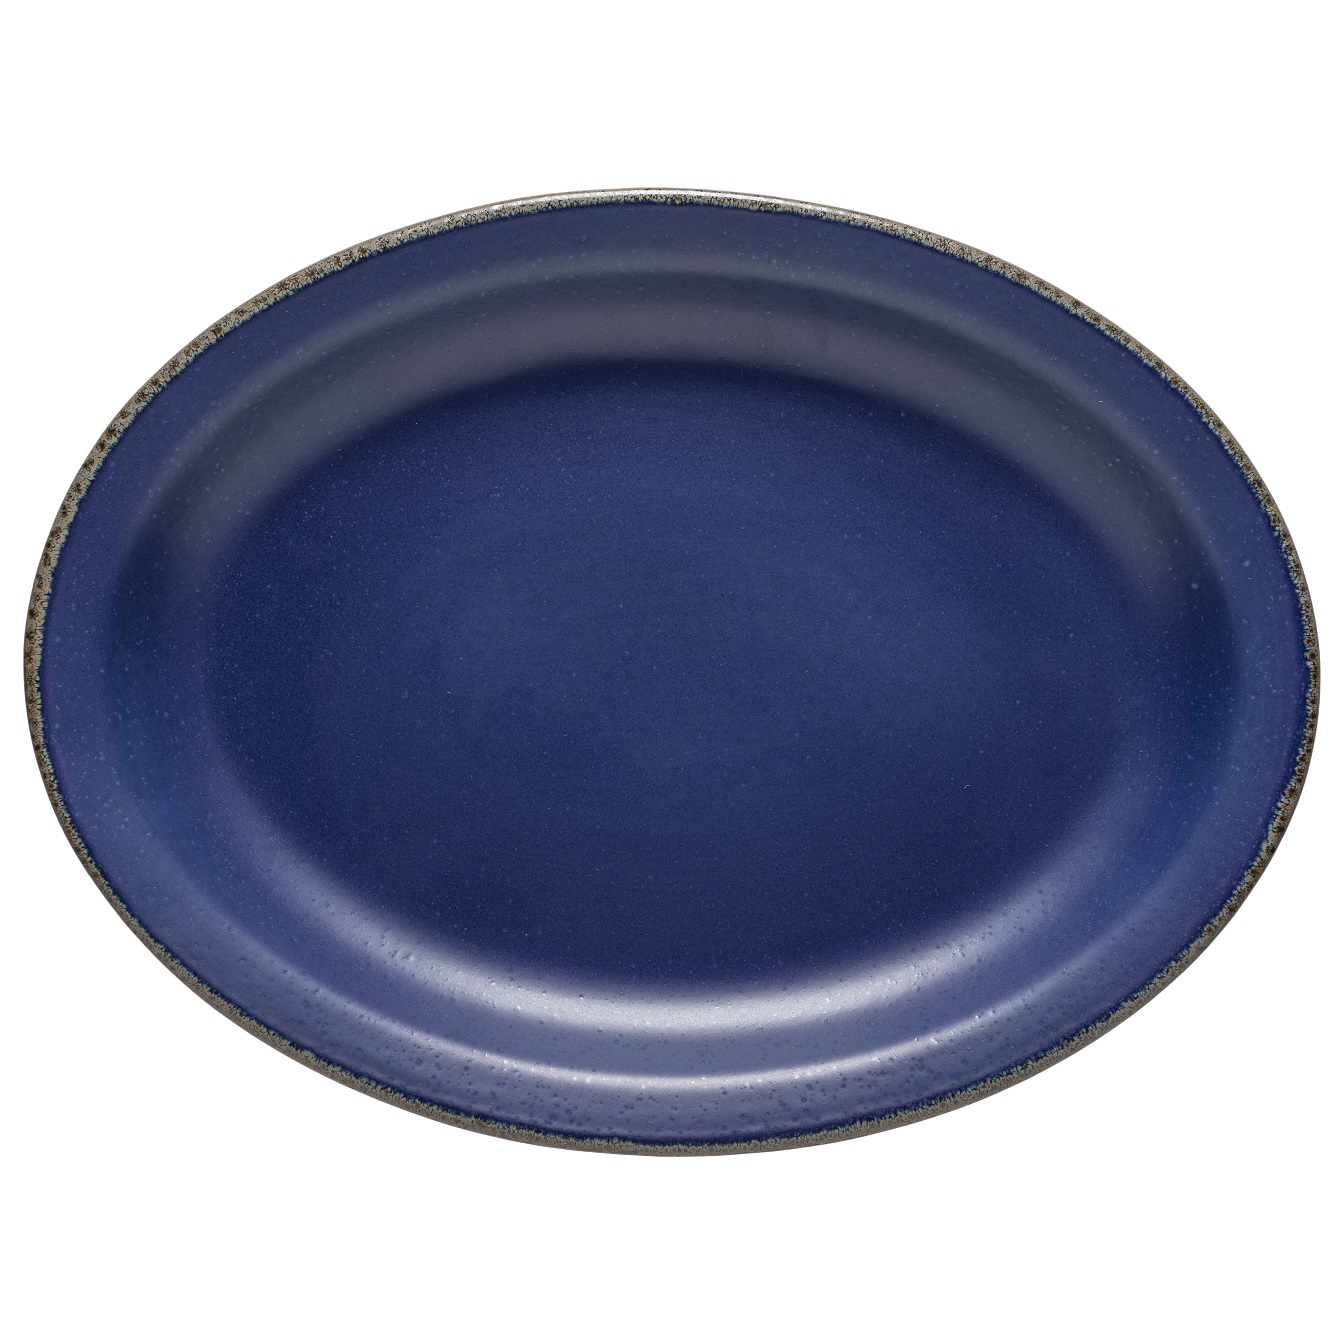 Positano Blue Oval Platter 40cm Gift